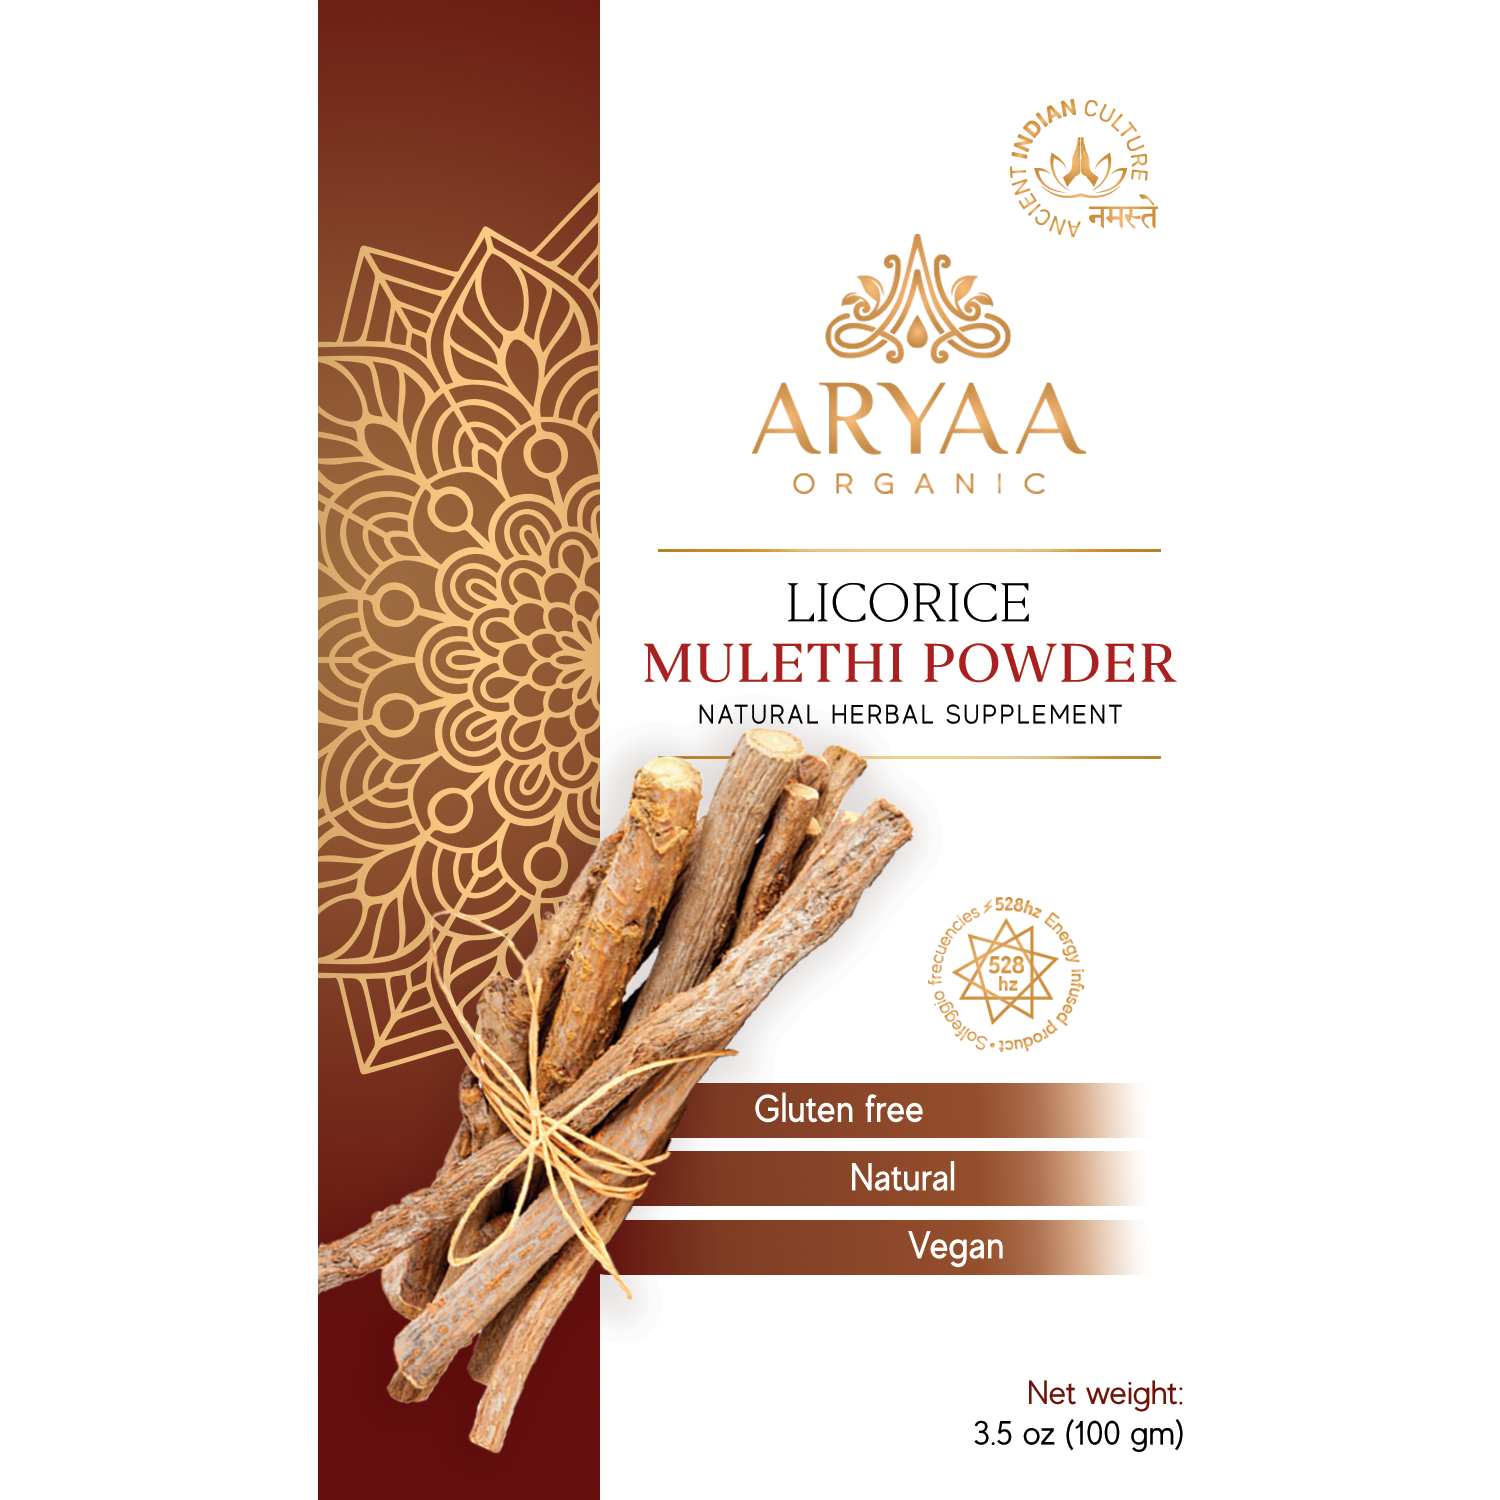 Aryaa Organic Mulethi Powder (Organic Licorice)- Energy Infused